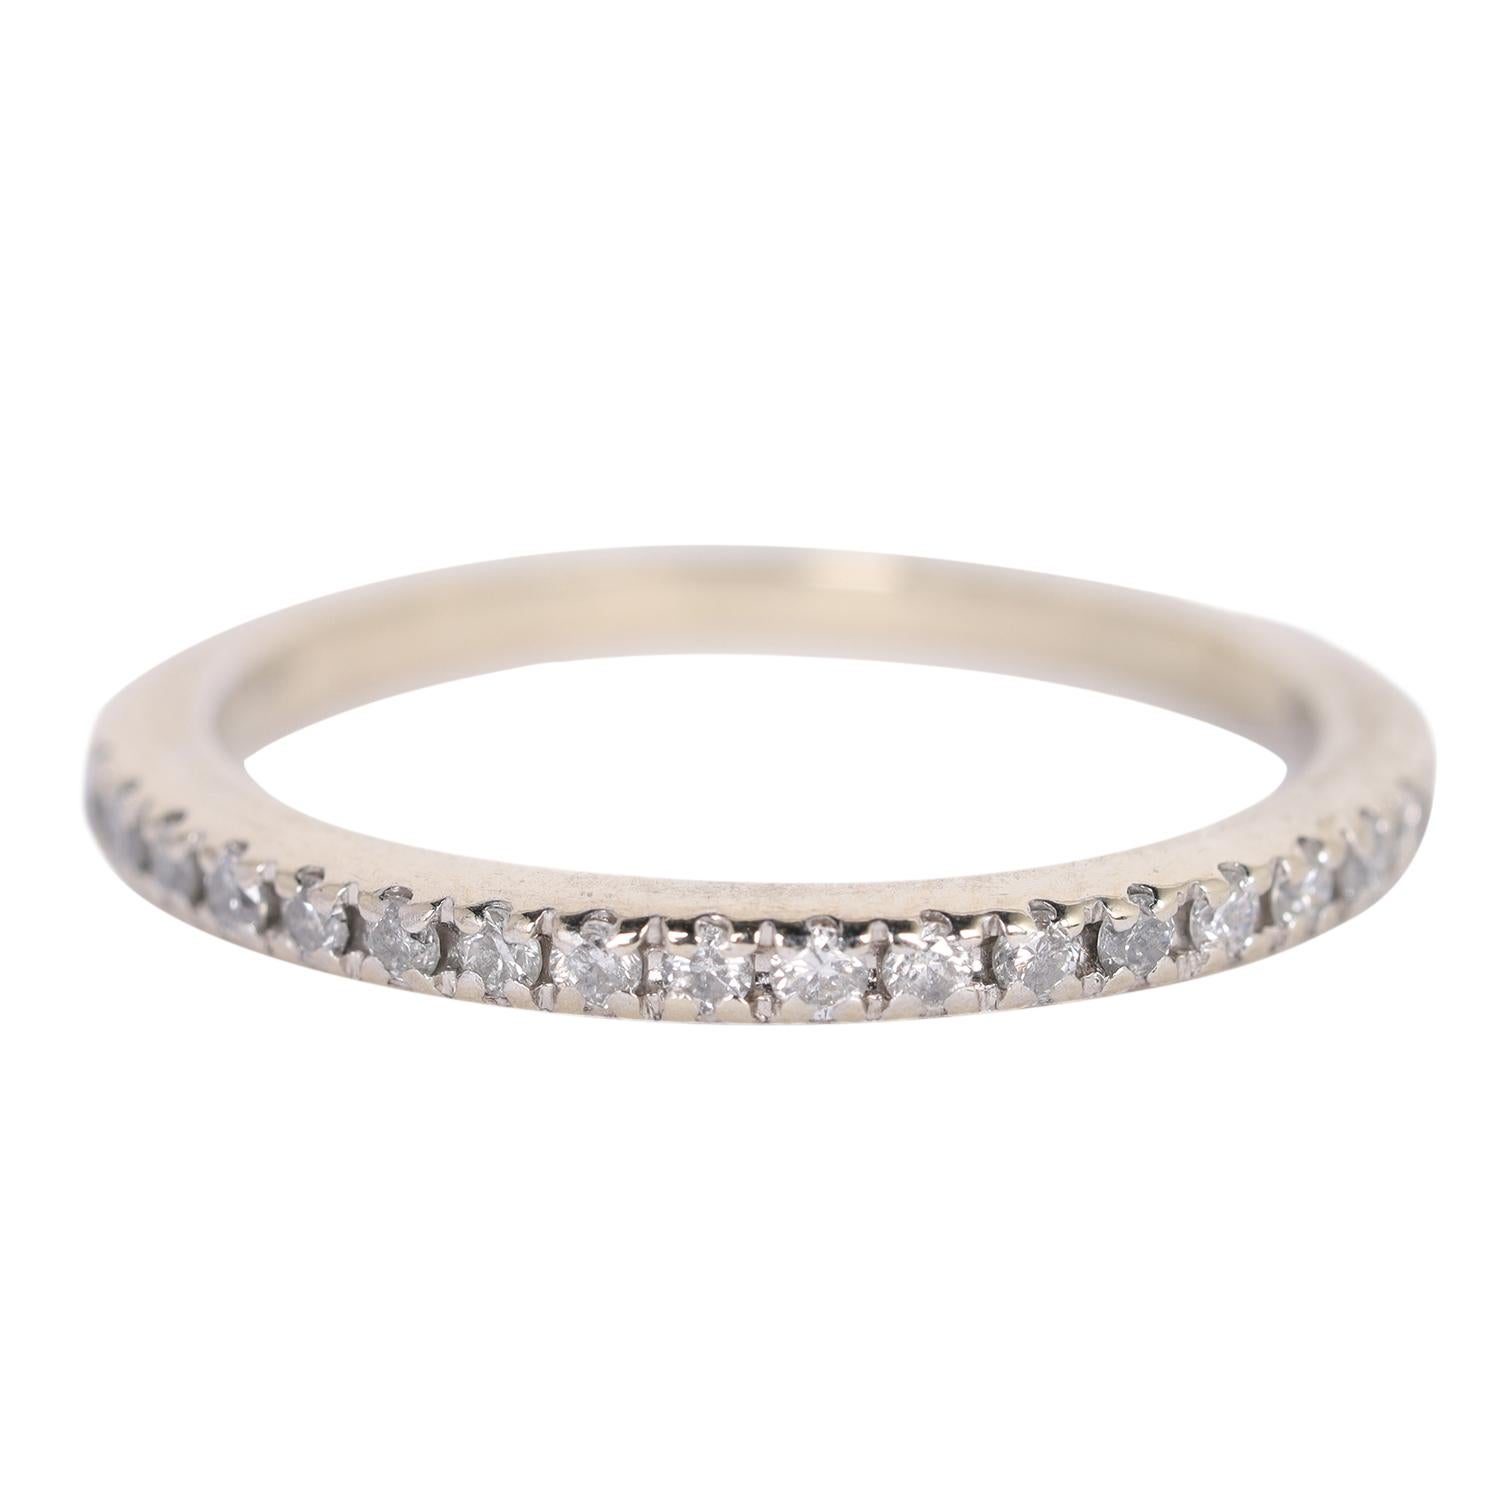 Organisé par The Lady Bag Ladies

Le parfait bracelet à superposer ! Ce bracelet en or blanc 14k est orné de 17 diamants ronds qui sont sertis individuellement dans un magnifique anneau à griffes. Les diamants brillent de tous leurs feux dans le